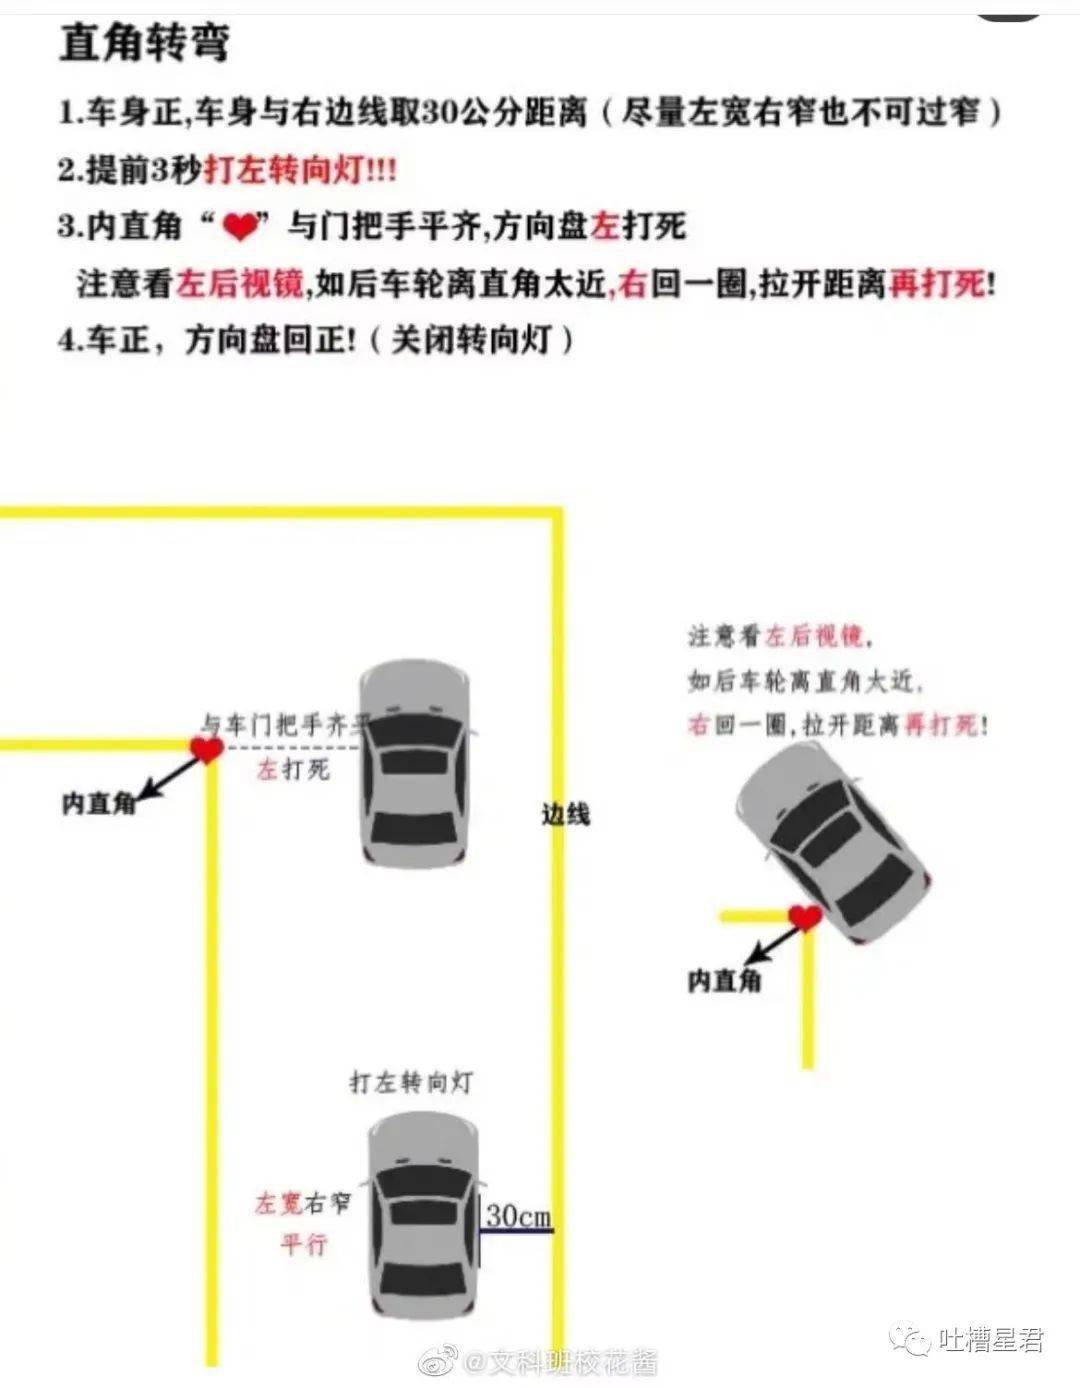 中国驾校的培训方式好吗 司机开车陋习与它有关吗